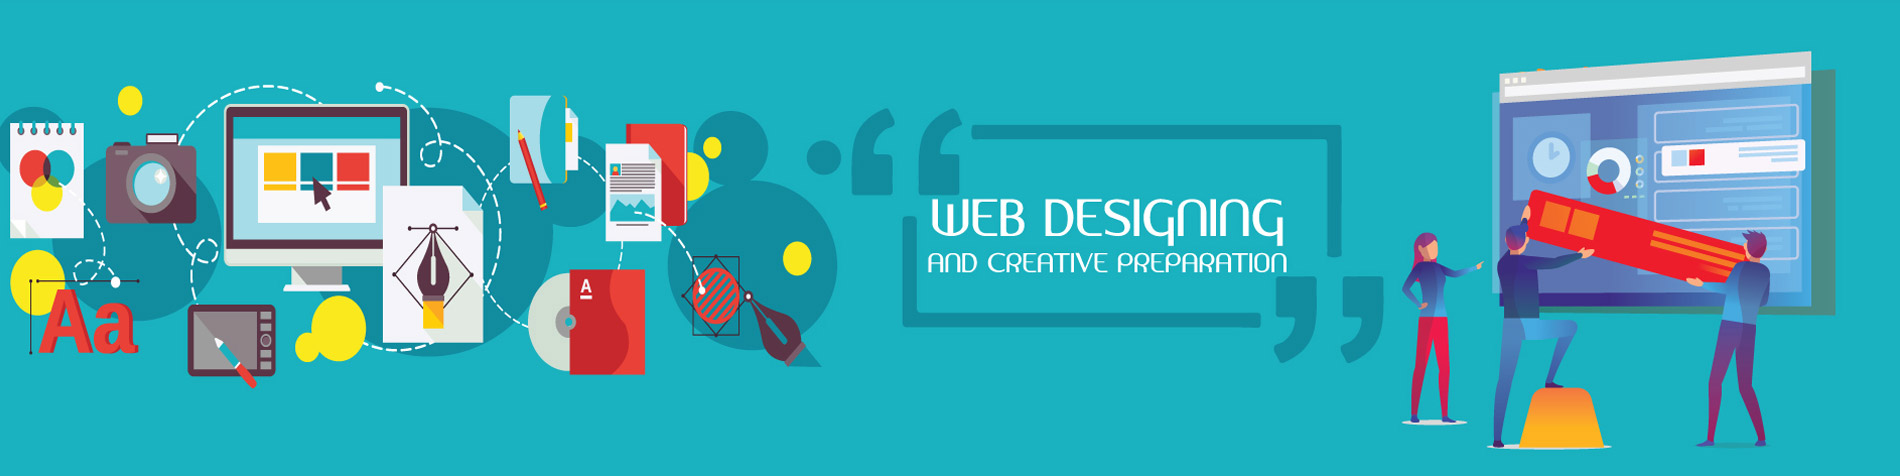 Best Web Design Services in Noida